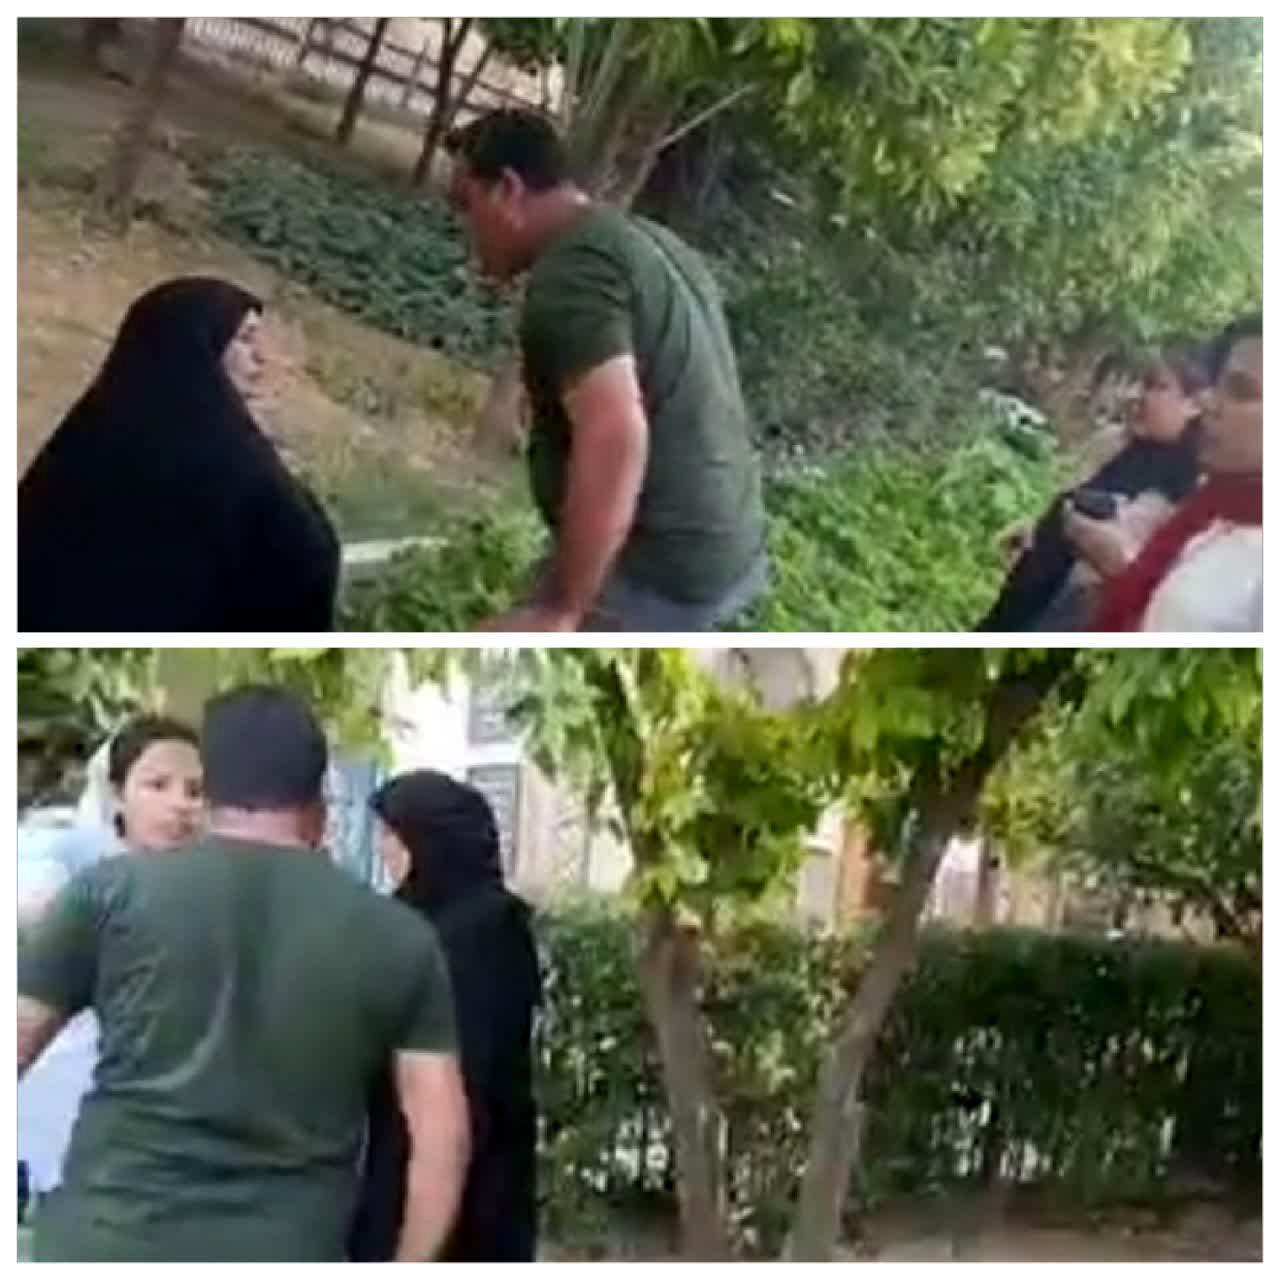 روایت متفاوت از درگیری بر سرحجاب در نارنجستان شیراز